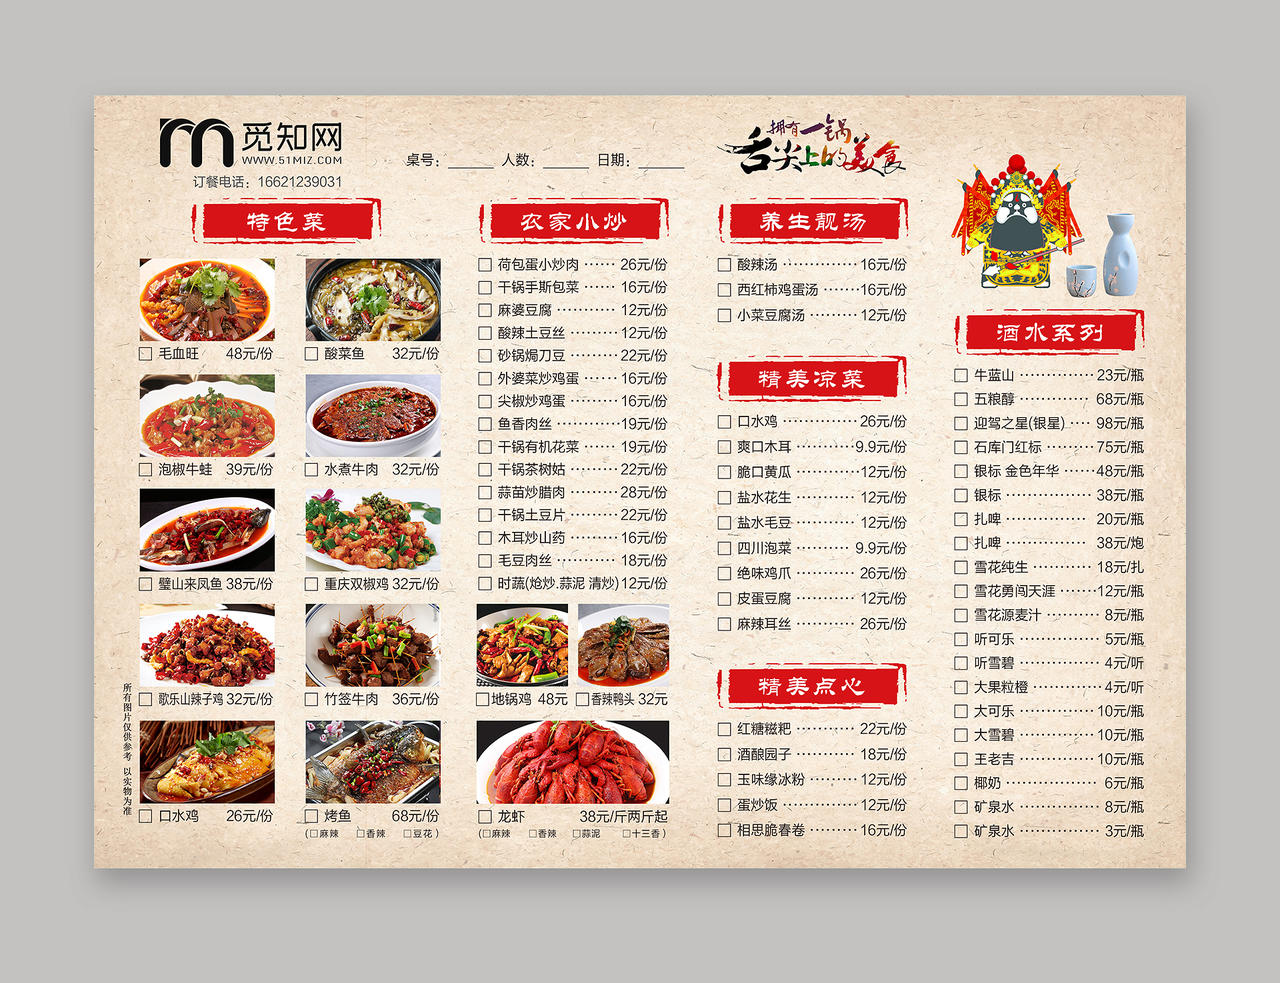 重庆特色美食毛血旺舌尖上的中国菜单重庆美食毛血旺